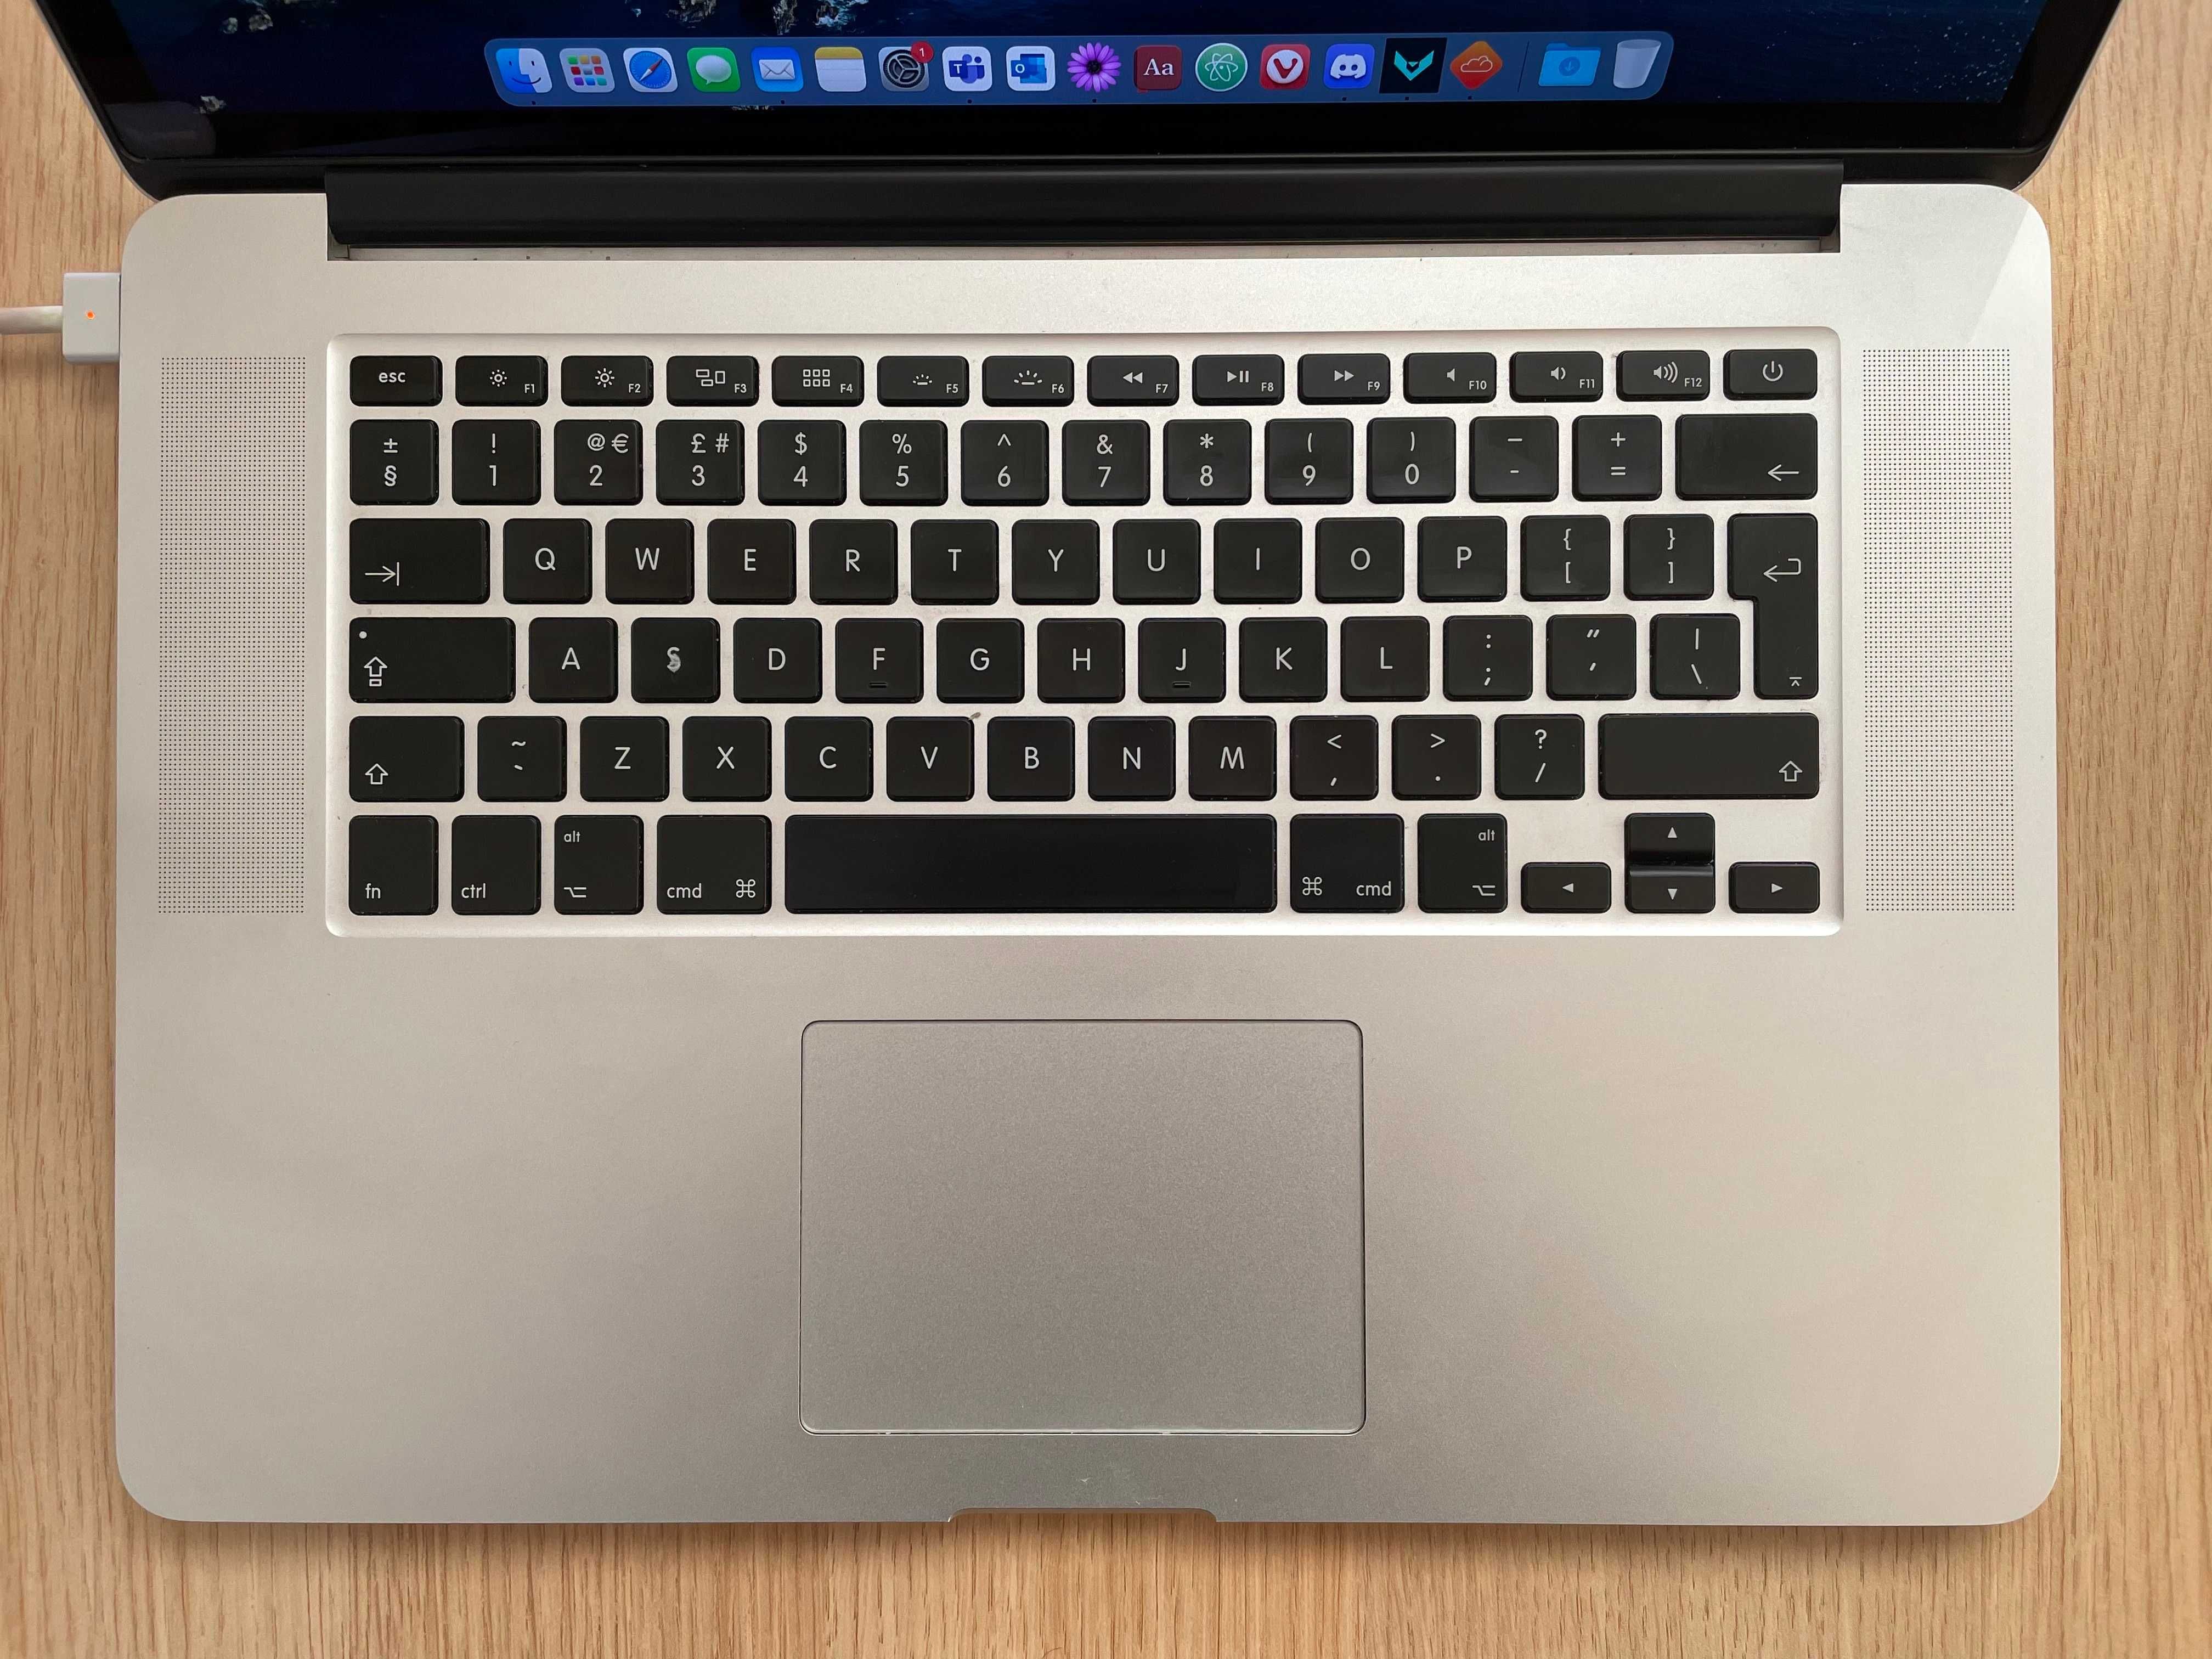 MacBook Pro 15", 2.2GHz Quad-Core, 250GB SSD, i7, 16 RAM, Mid 2015